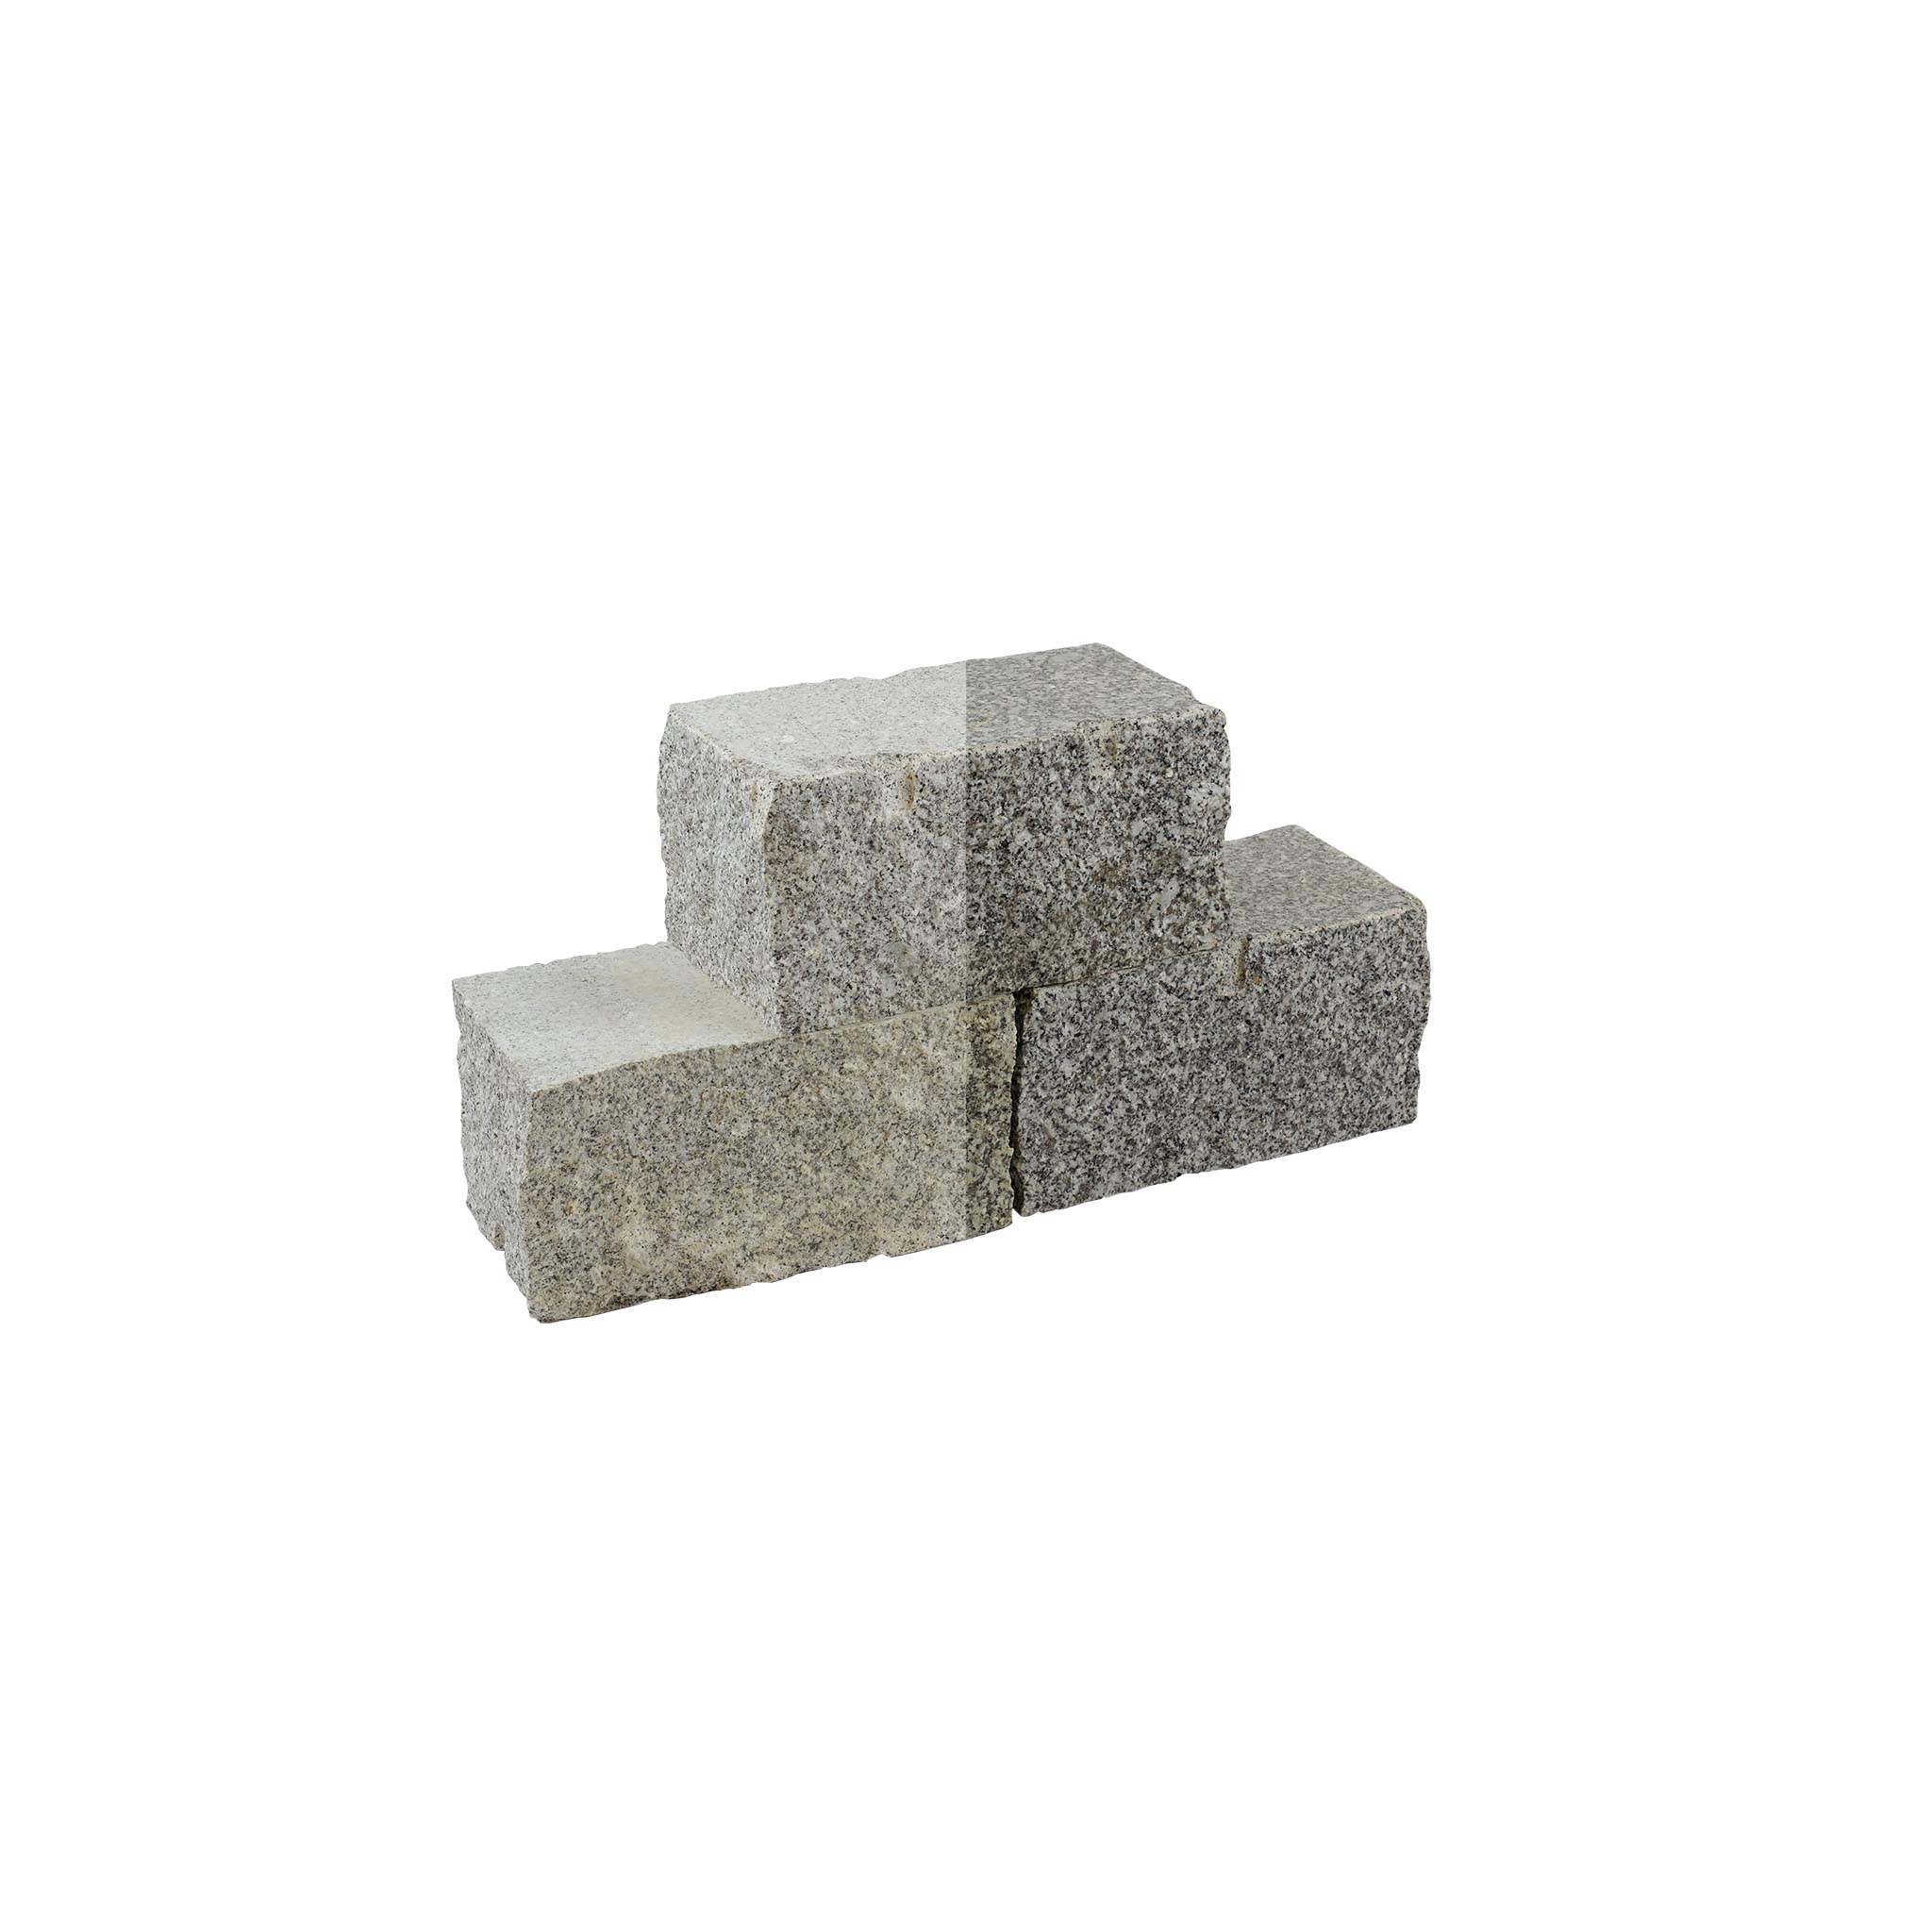 Mauersteine, Granit grau (Schlesisch) gesägt & gespalten, Granit Mauerstein, 20 x 20 x 40 cm (+/- 3–5), (grau), 